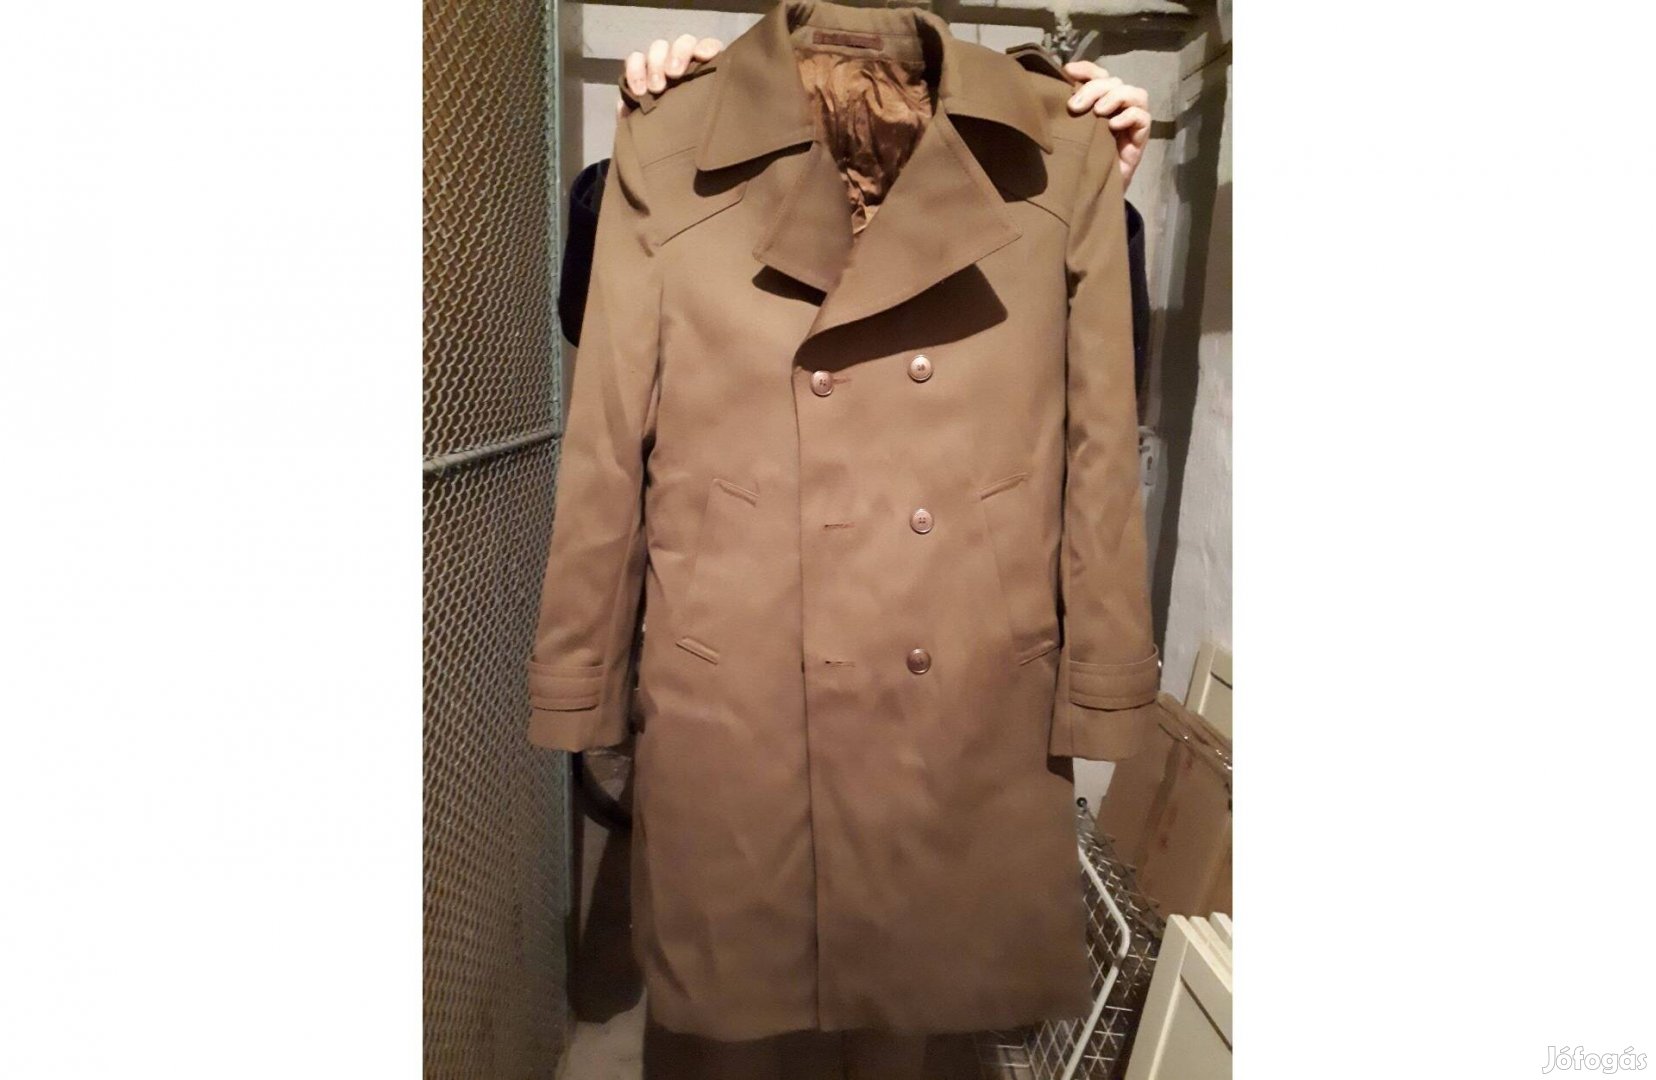 Kabát átlagos méretű férfi részére, remek állapotban eladó